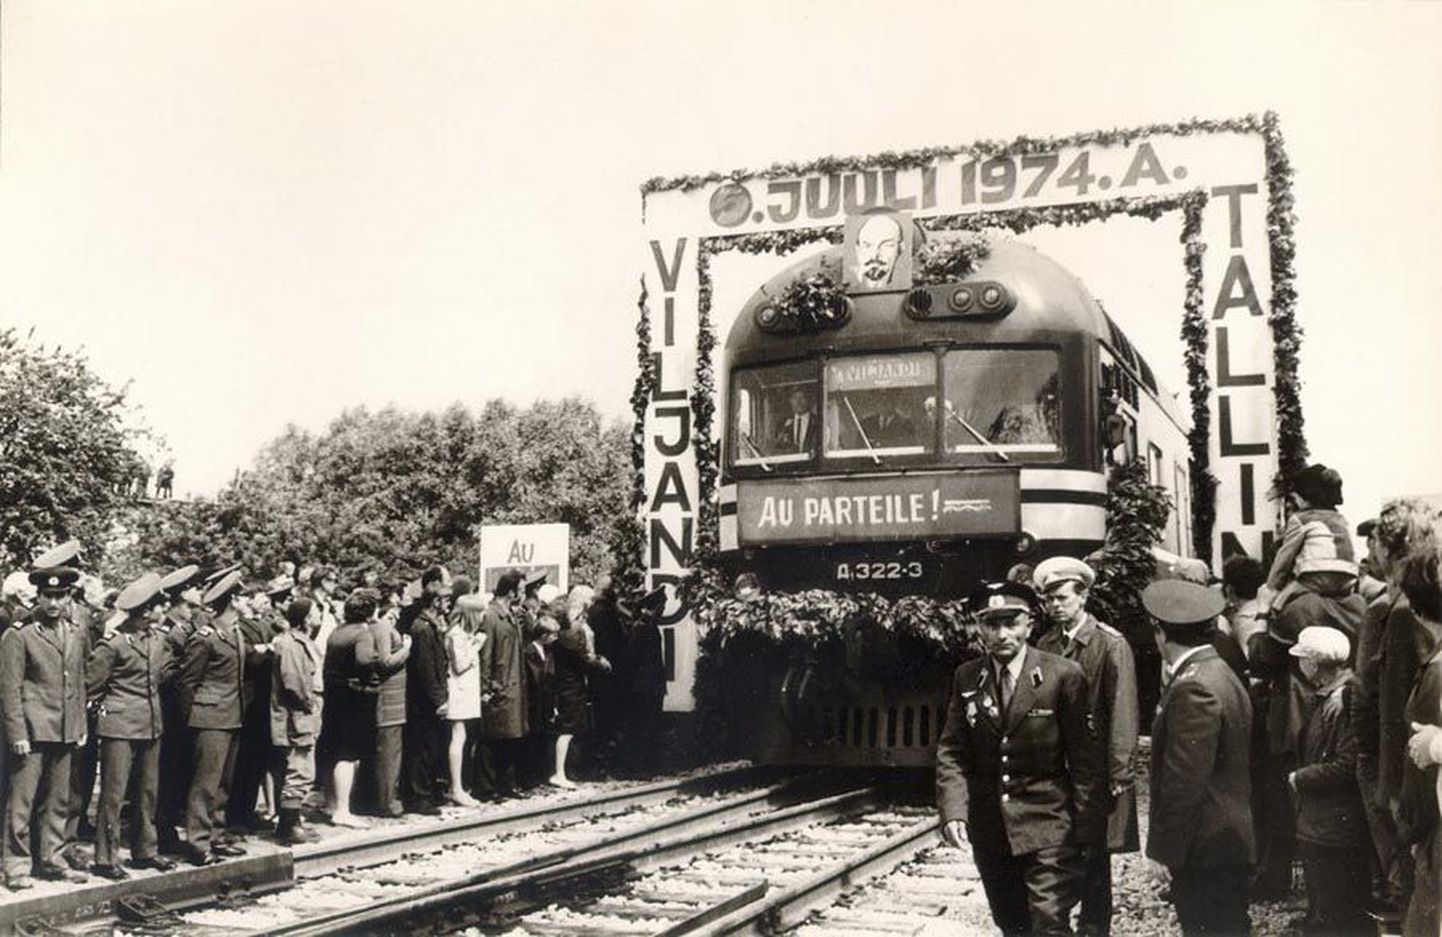 Laiarööpmelise raudteerongi esimene saabumine Viljandisse 5. juulil 1974.